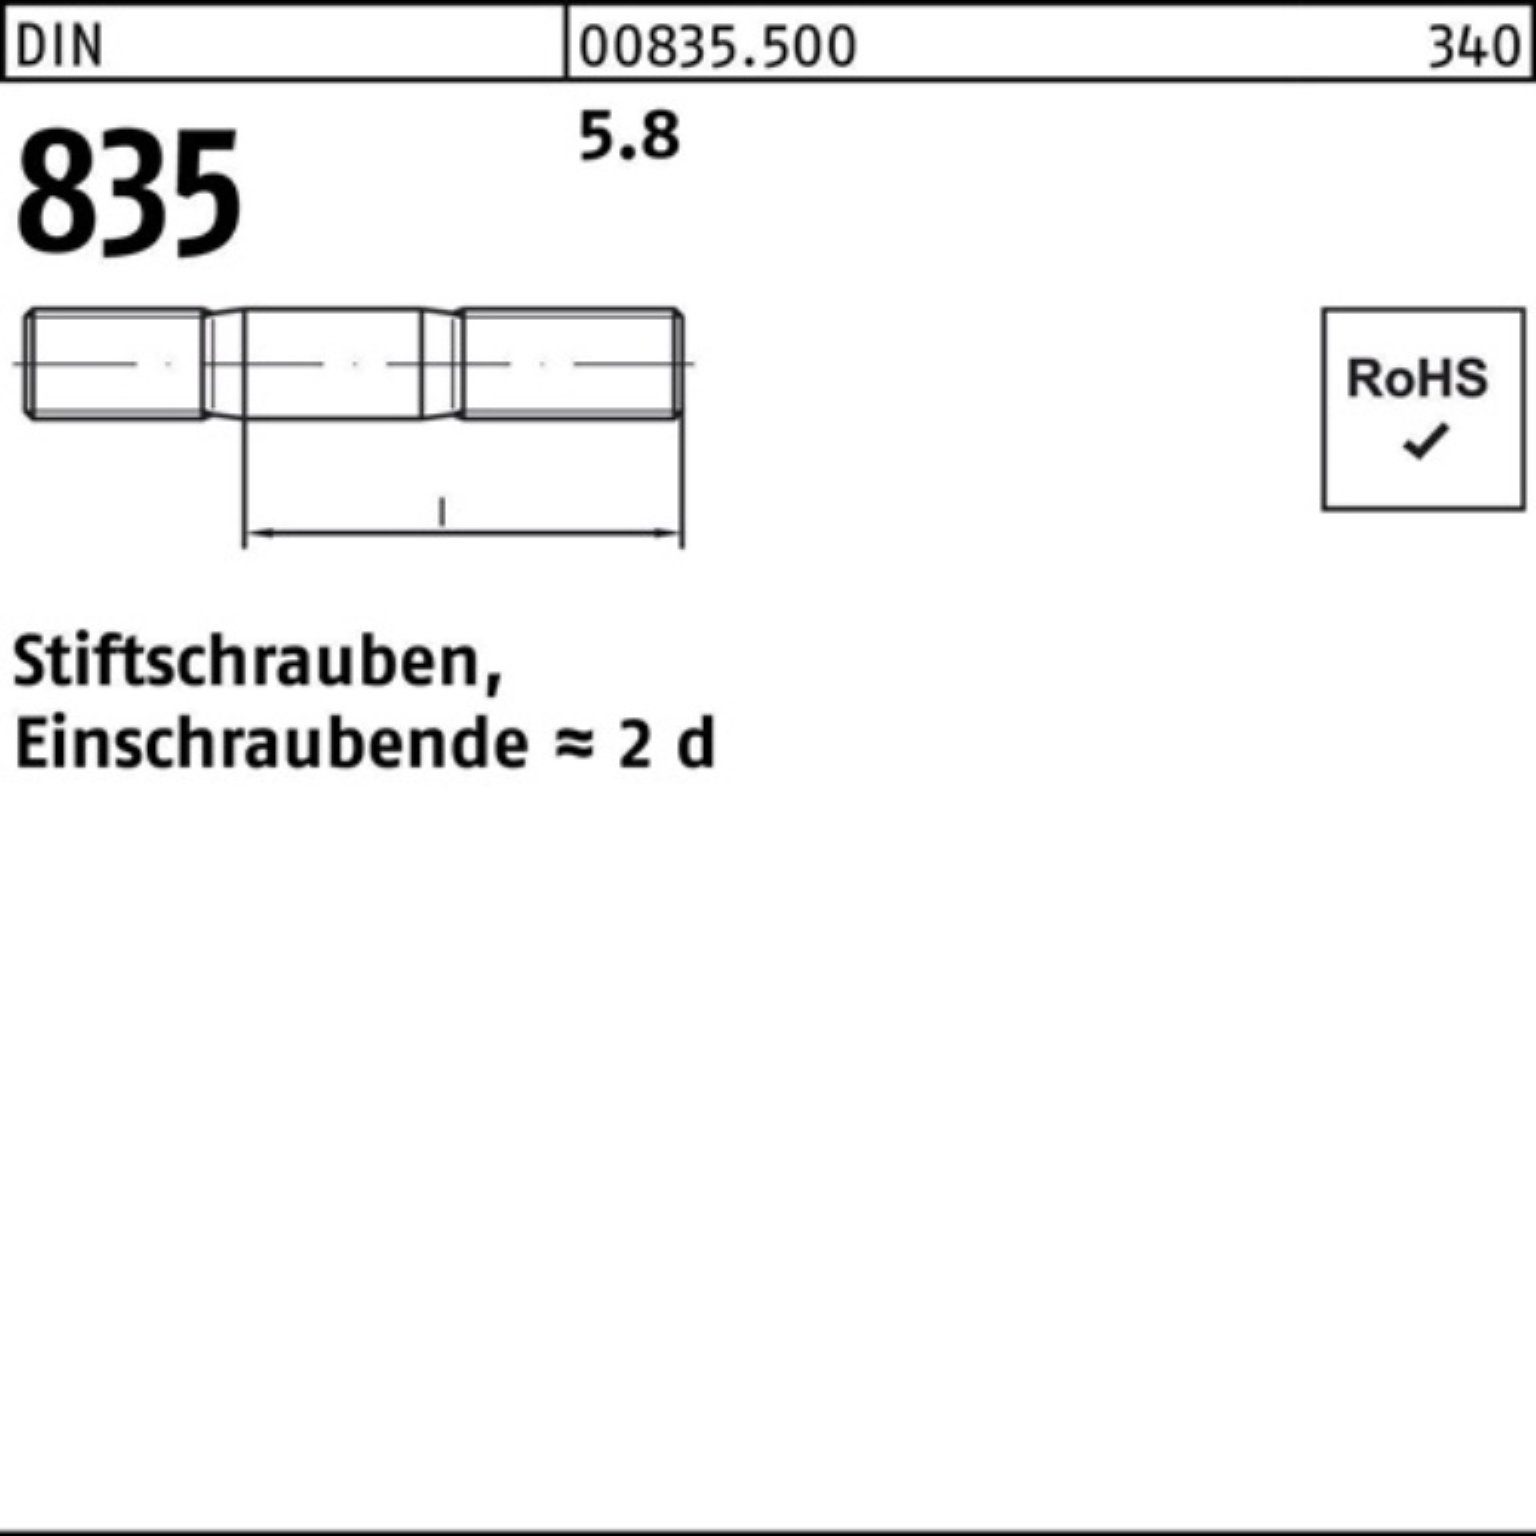 Stiftschraube Stiftschraube M8x 5.8 DIN Pack 100er 835 Reyher 100 Einschraubende=2d 30 Stü